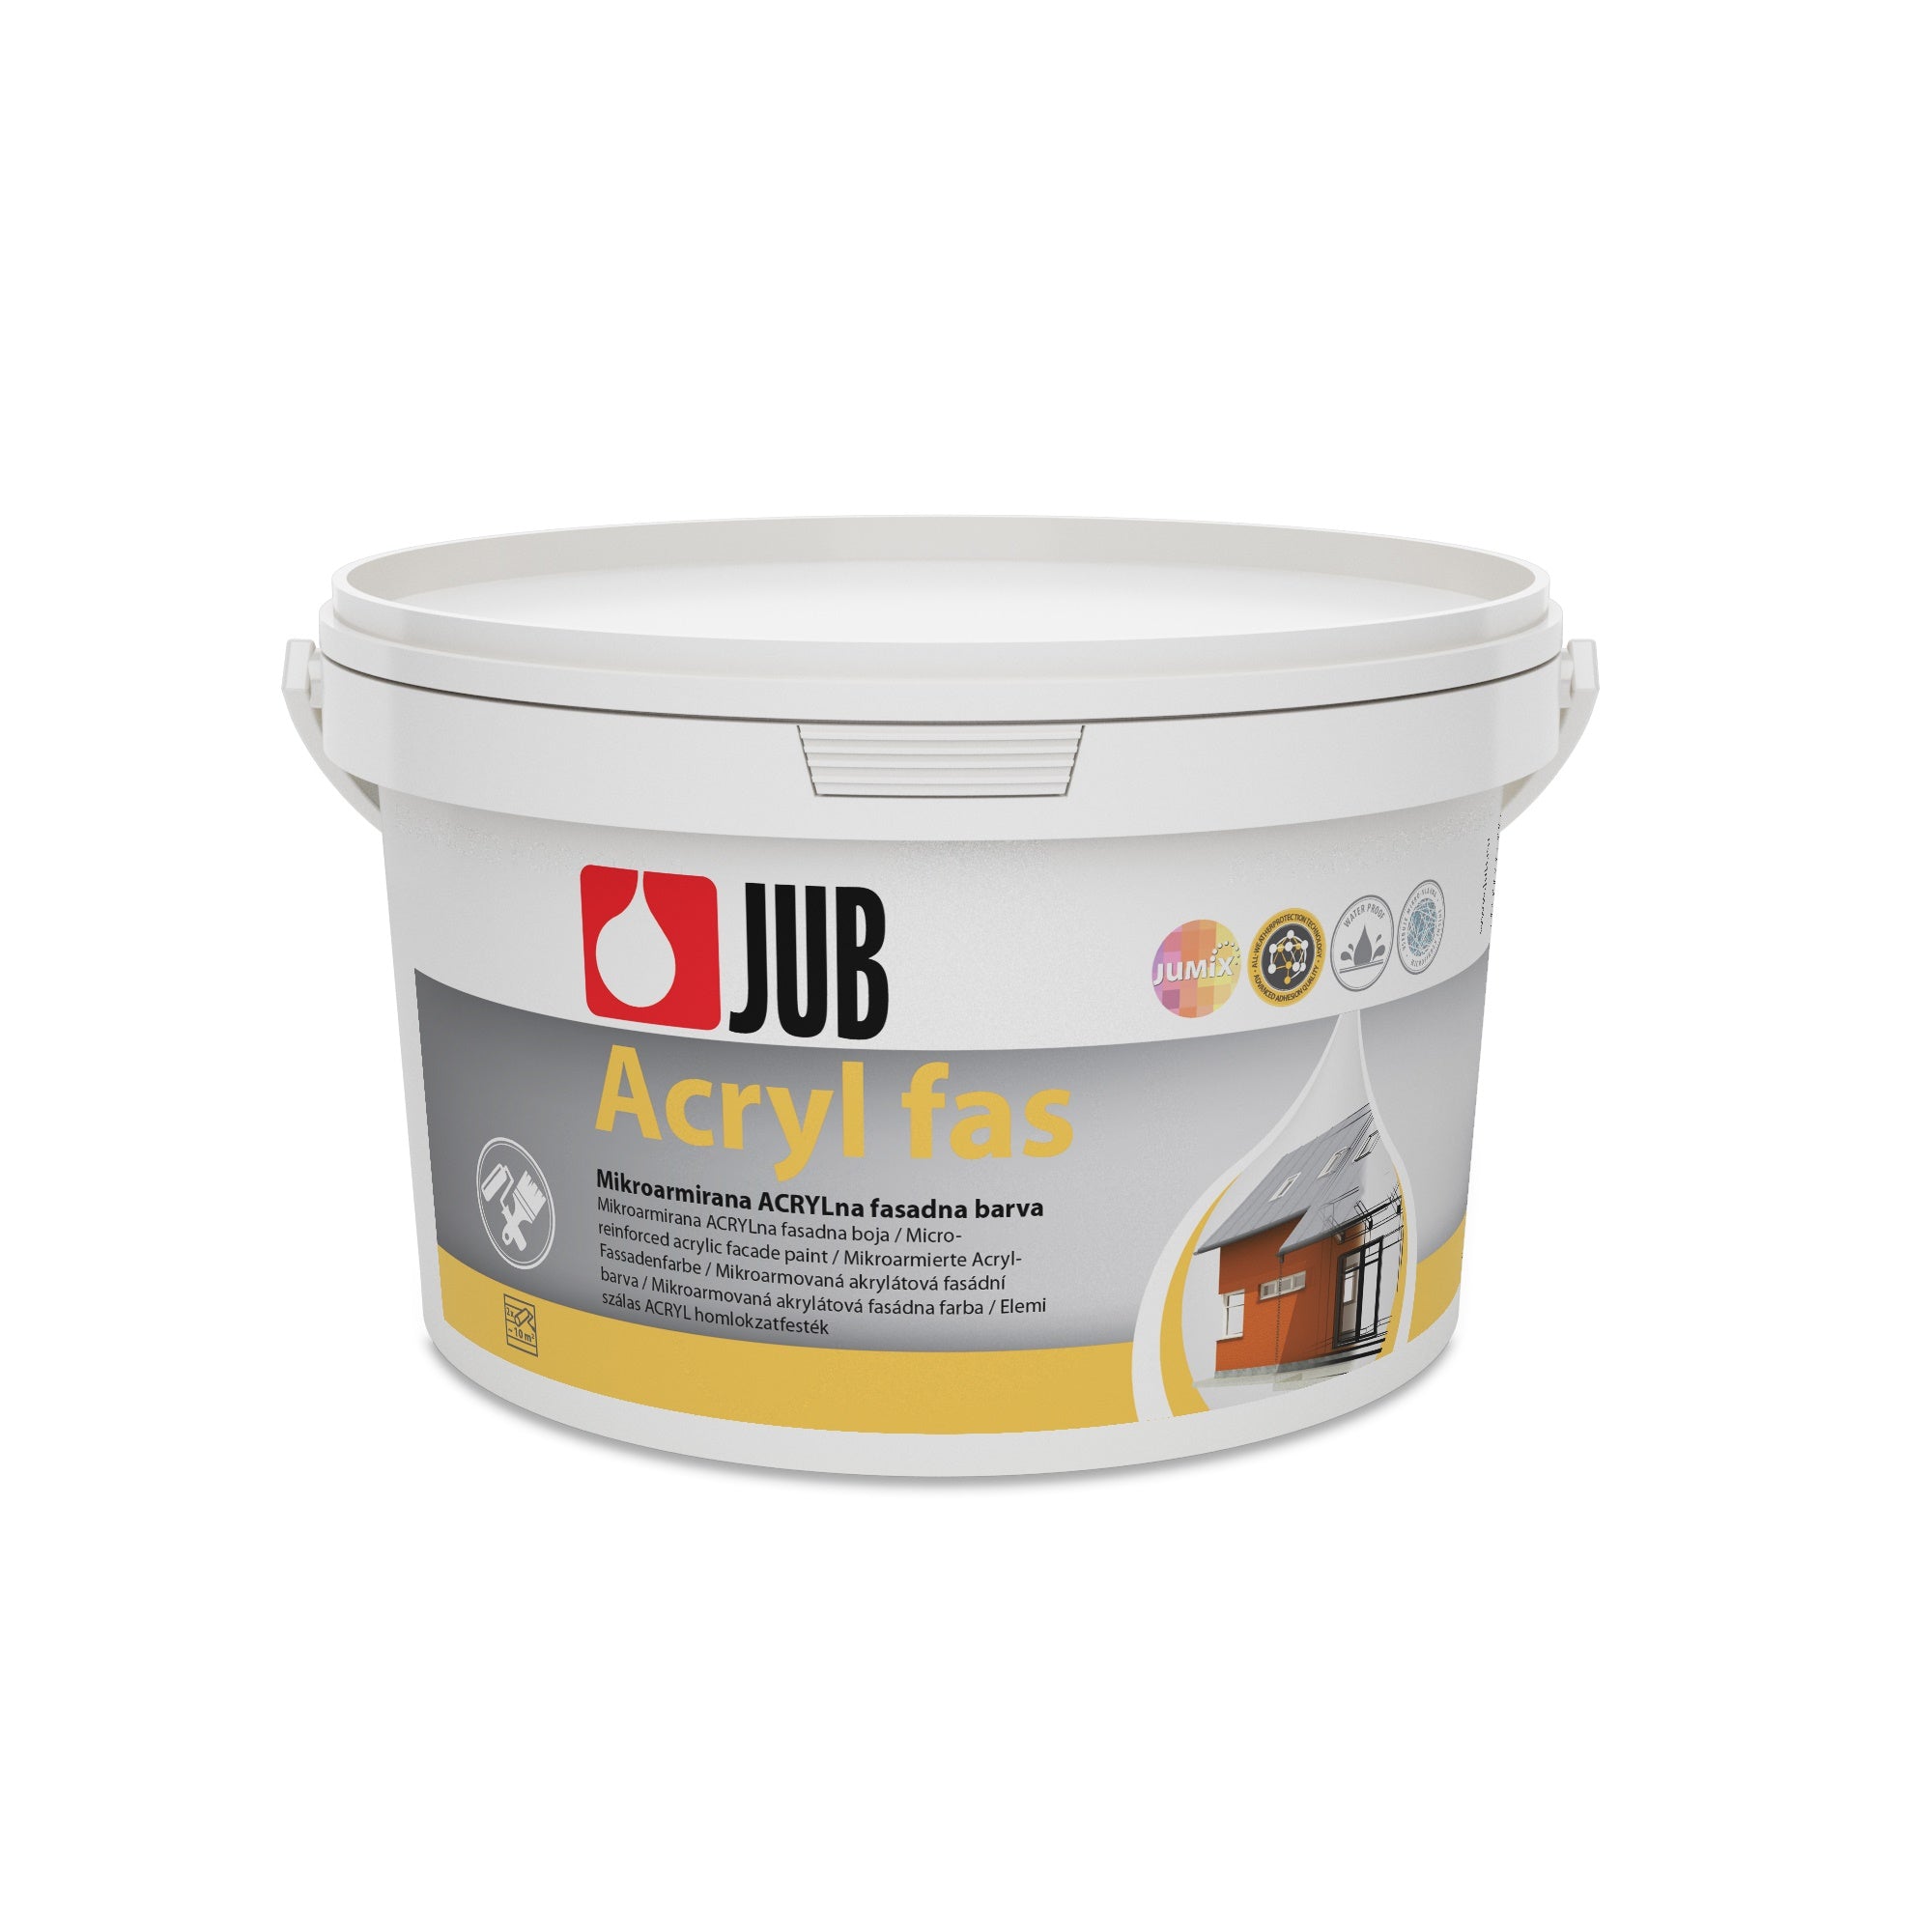 JUB Acryl fas mikroarmovaná akrylátová fasádna farba 2 l